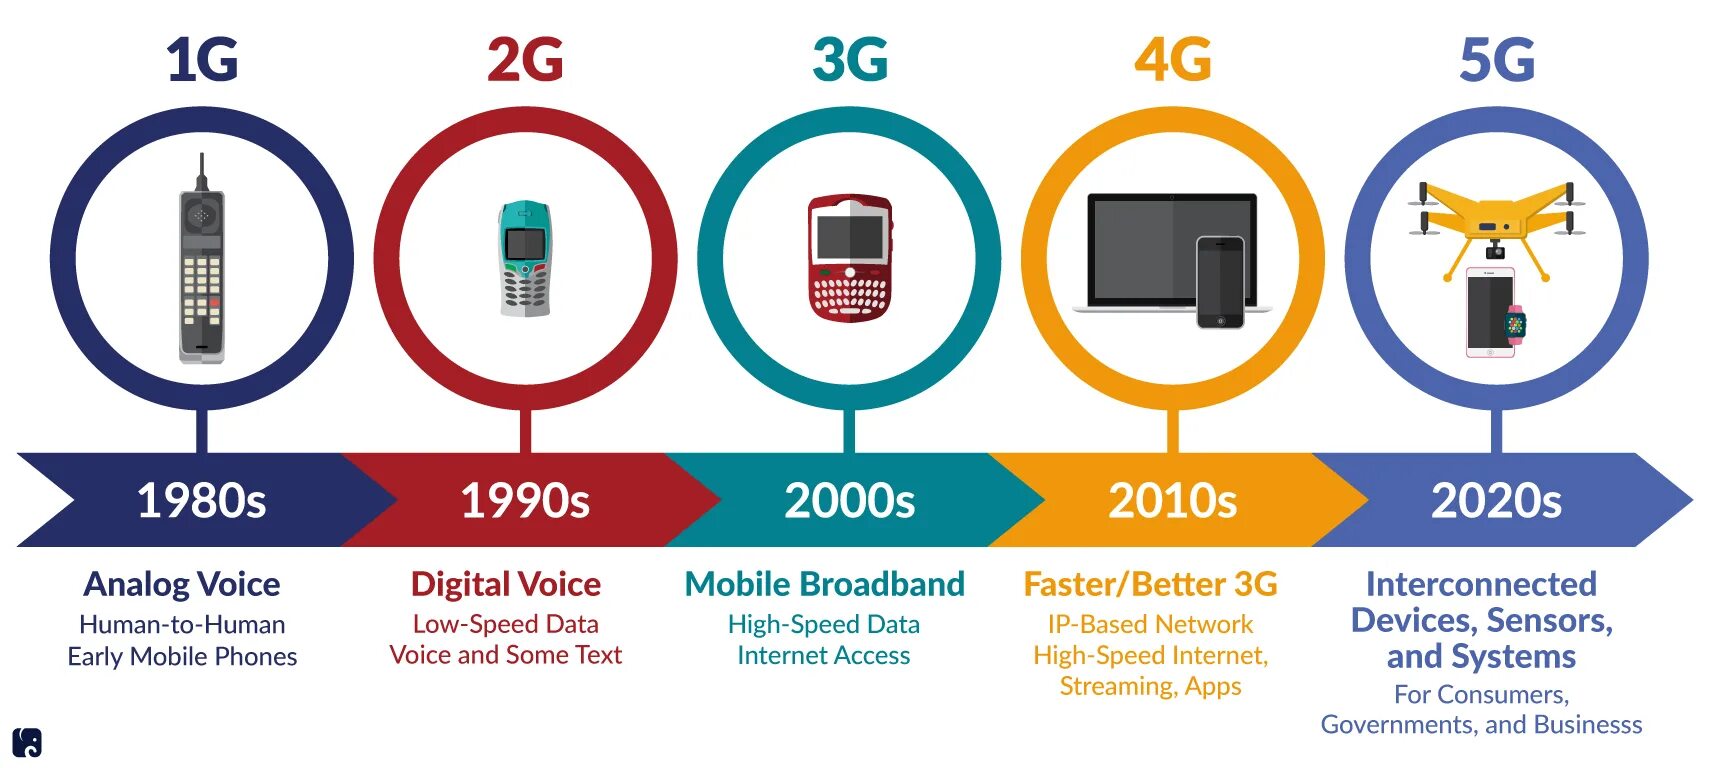 Технологии сотовой связи 2g 3g 4g. Поколения сотовой связи 2g 3g и 4g. 4g стандарты сотовой сети. Сотовая связь 1g 2g 3g 4g 5g. Сравнение 4g и 5g